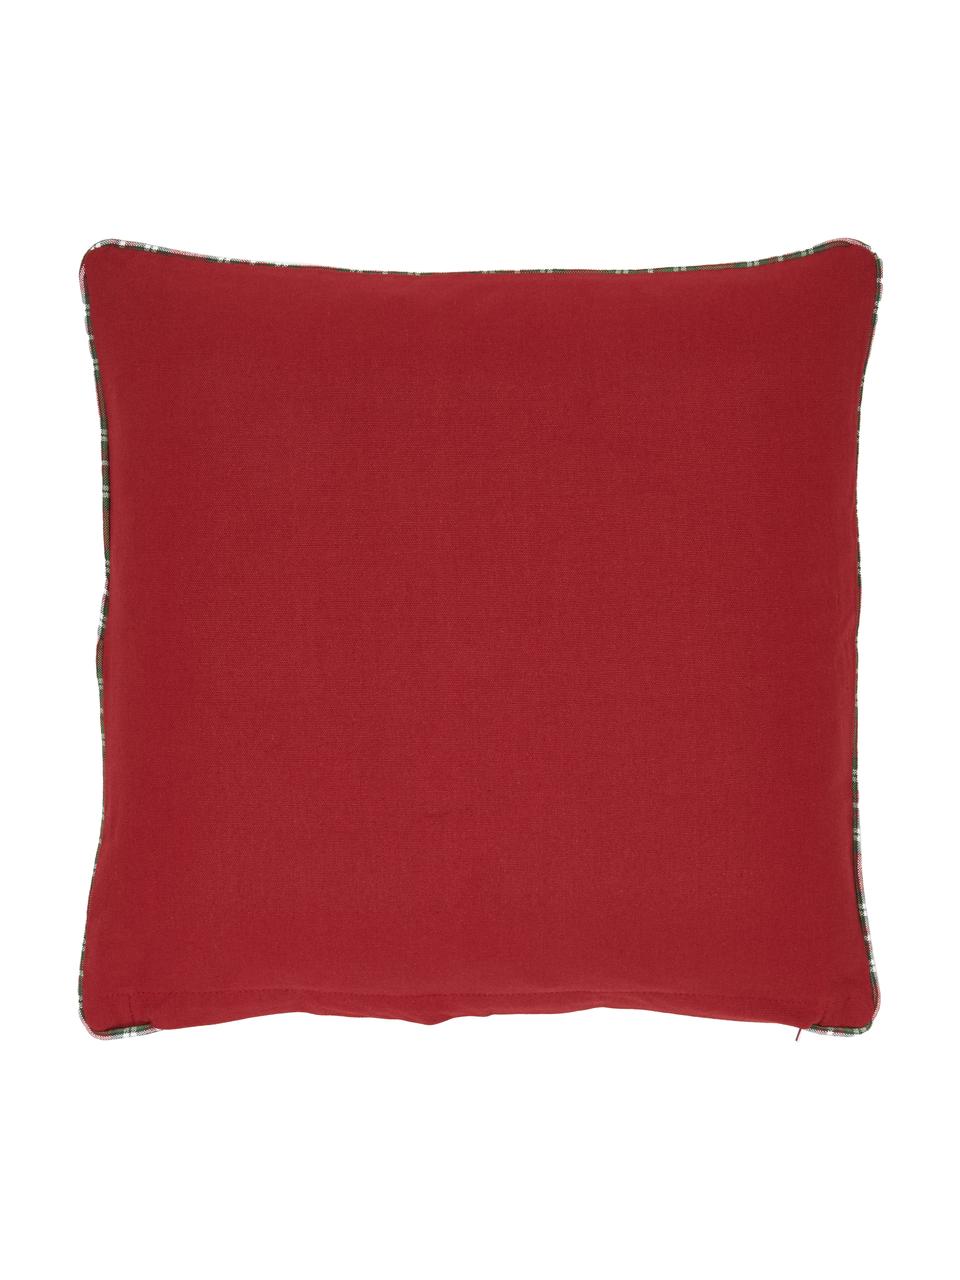 Housse de coussin 45x45 réversible Noel, 100 % coton, Endroit : crème, rouge, vert Envers : rouge, larg. 45 x long. 45 cm